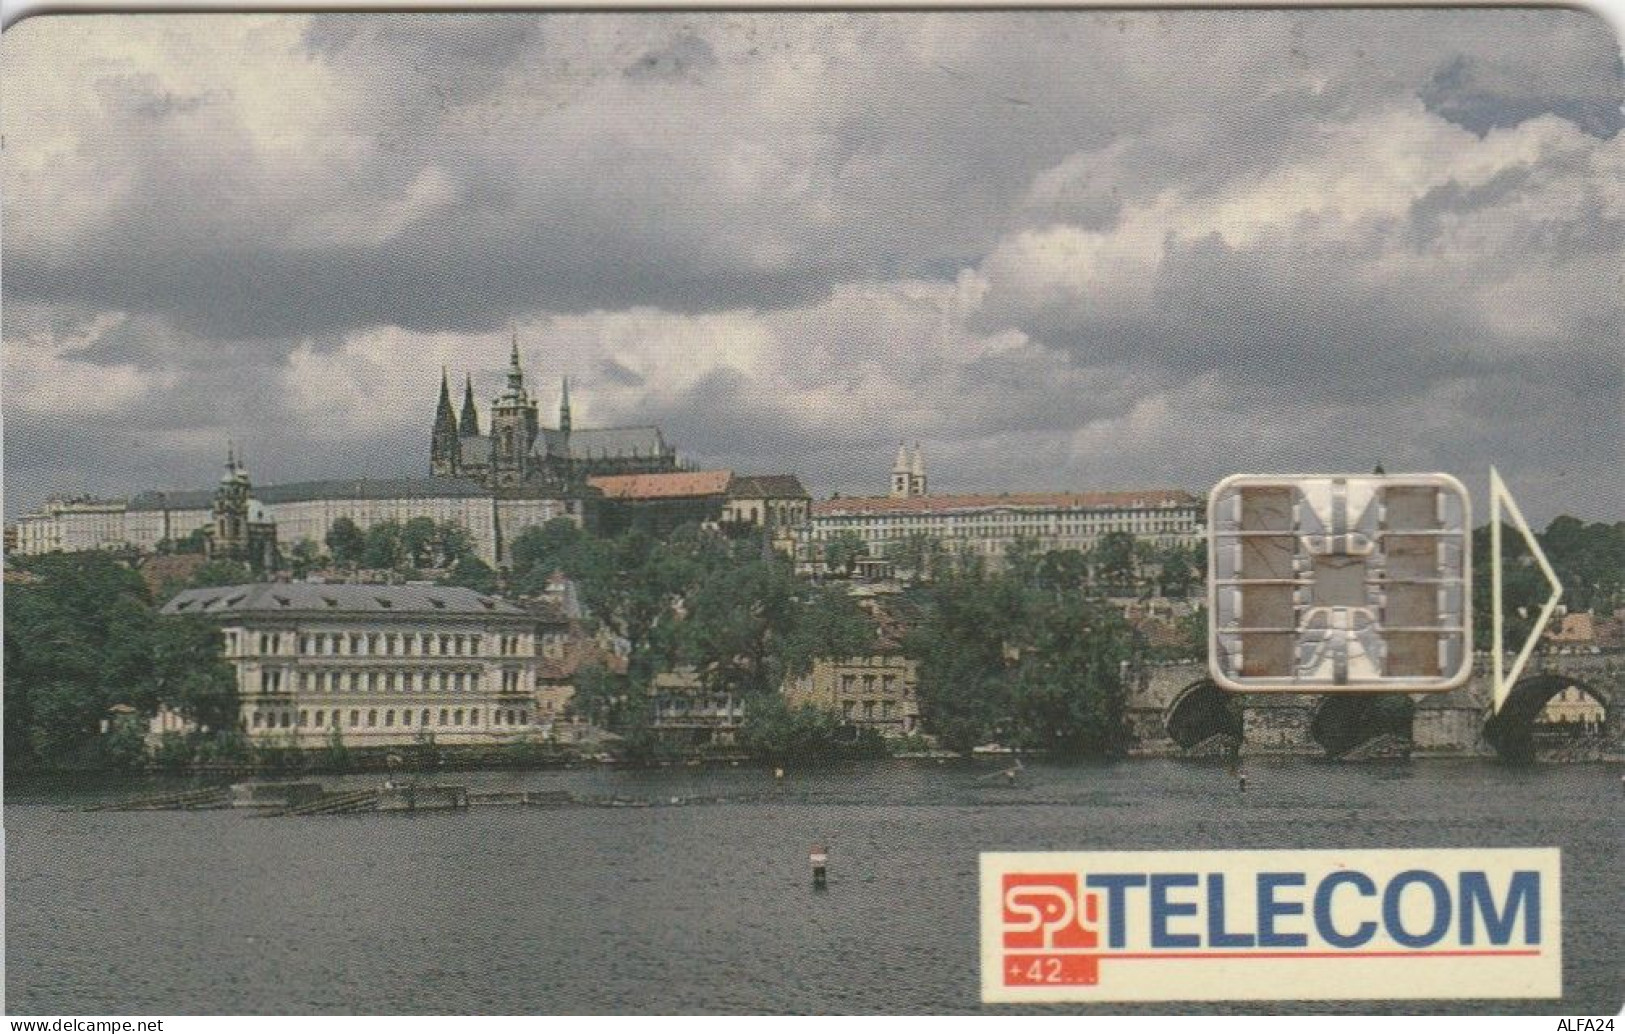 PHONE CARD REPUBBLICA CECA (J.36.1 - Tschechische Rep.